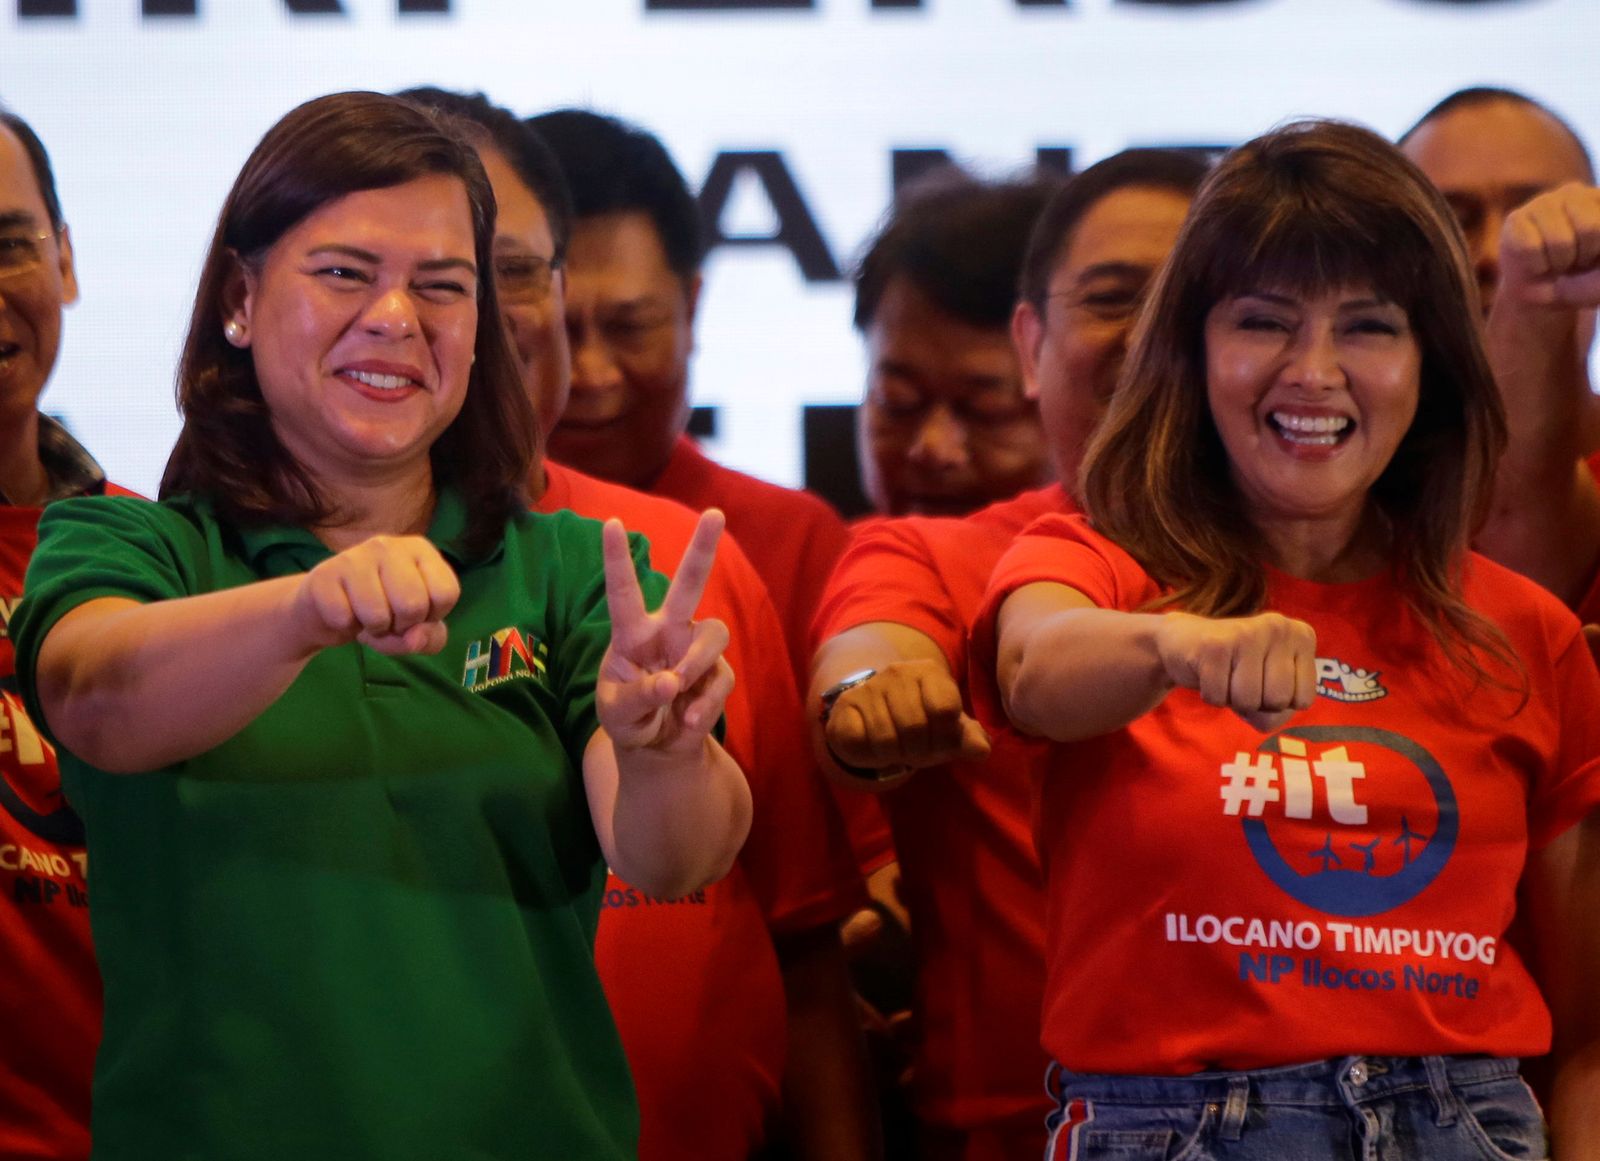 سارة دوتيرتي-كاربيو (يسار)، ابنة الرئيس الفلبيني رودريجو دوتيرتي، خلال اجتماع حزبي في مانيلا - 13 أغسطس 2018 - REUTERS